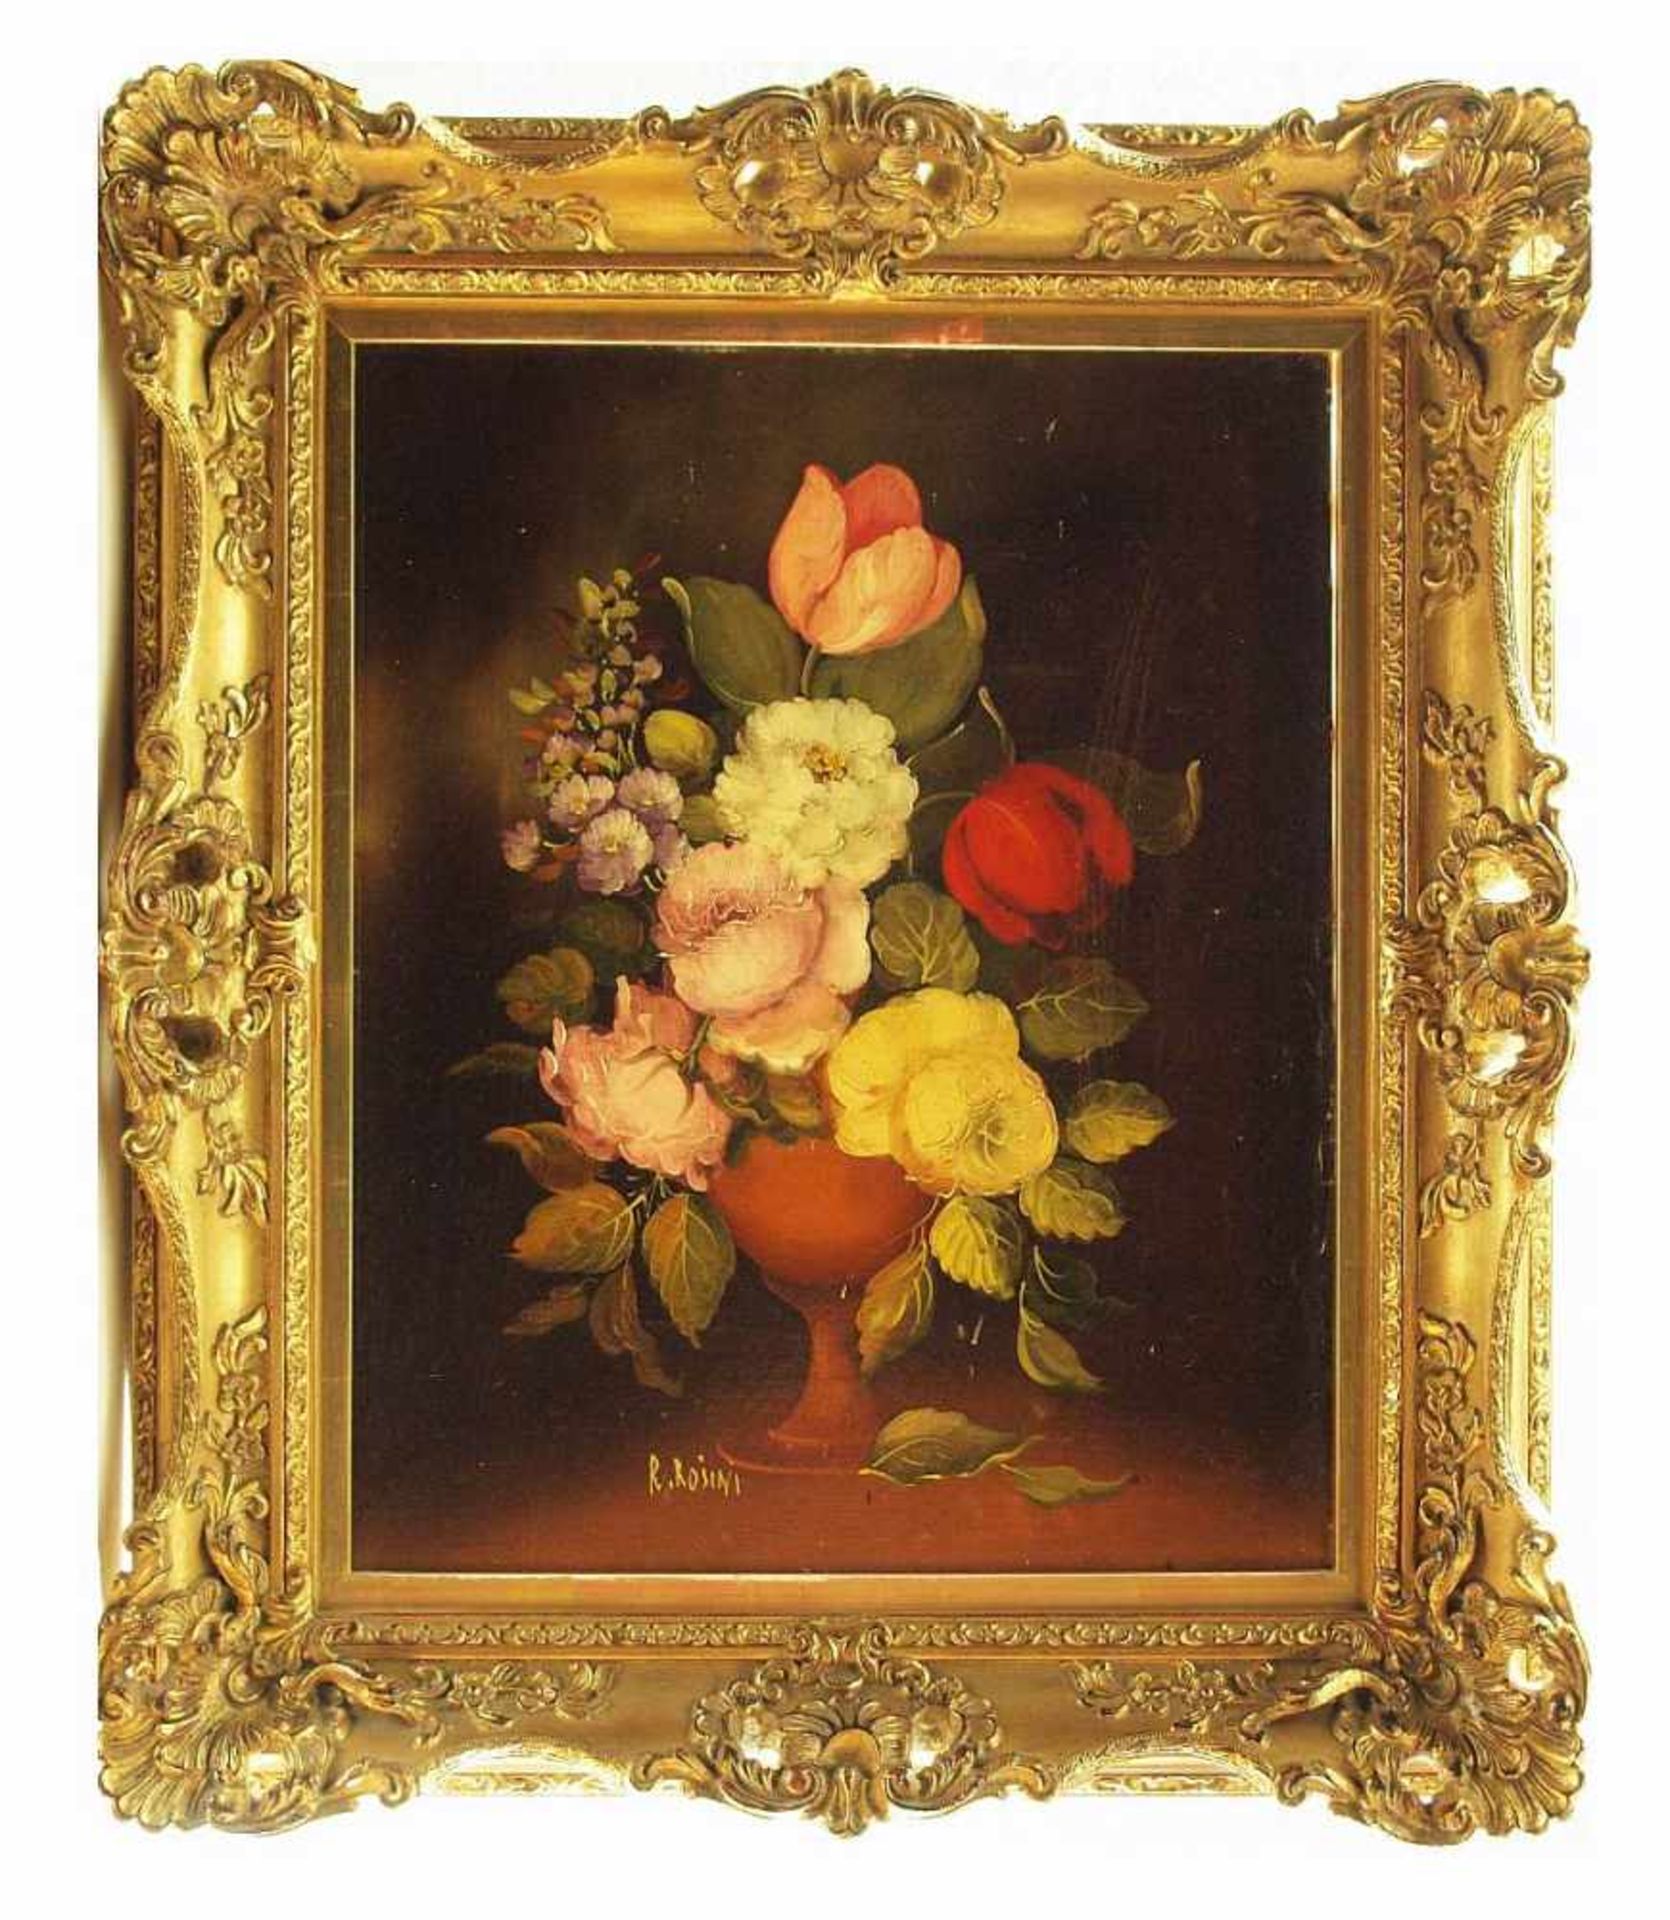 ROSINI, R. ROSINI, R. 20. Jahrhundert. Blumenstillleben mit Tulpen und Pfingstrosen. Öl auf - Bild 3 aus 5